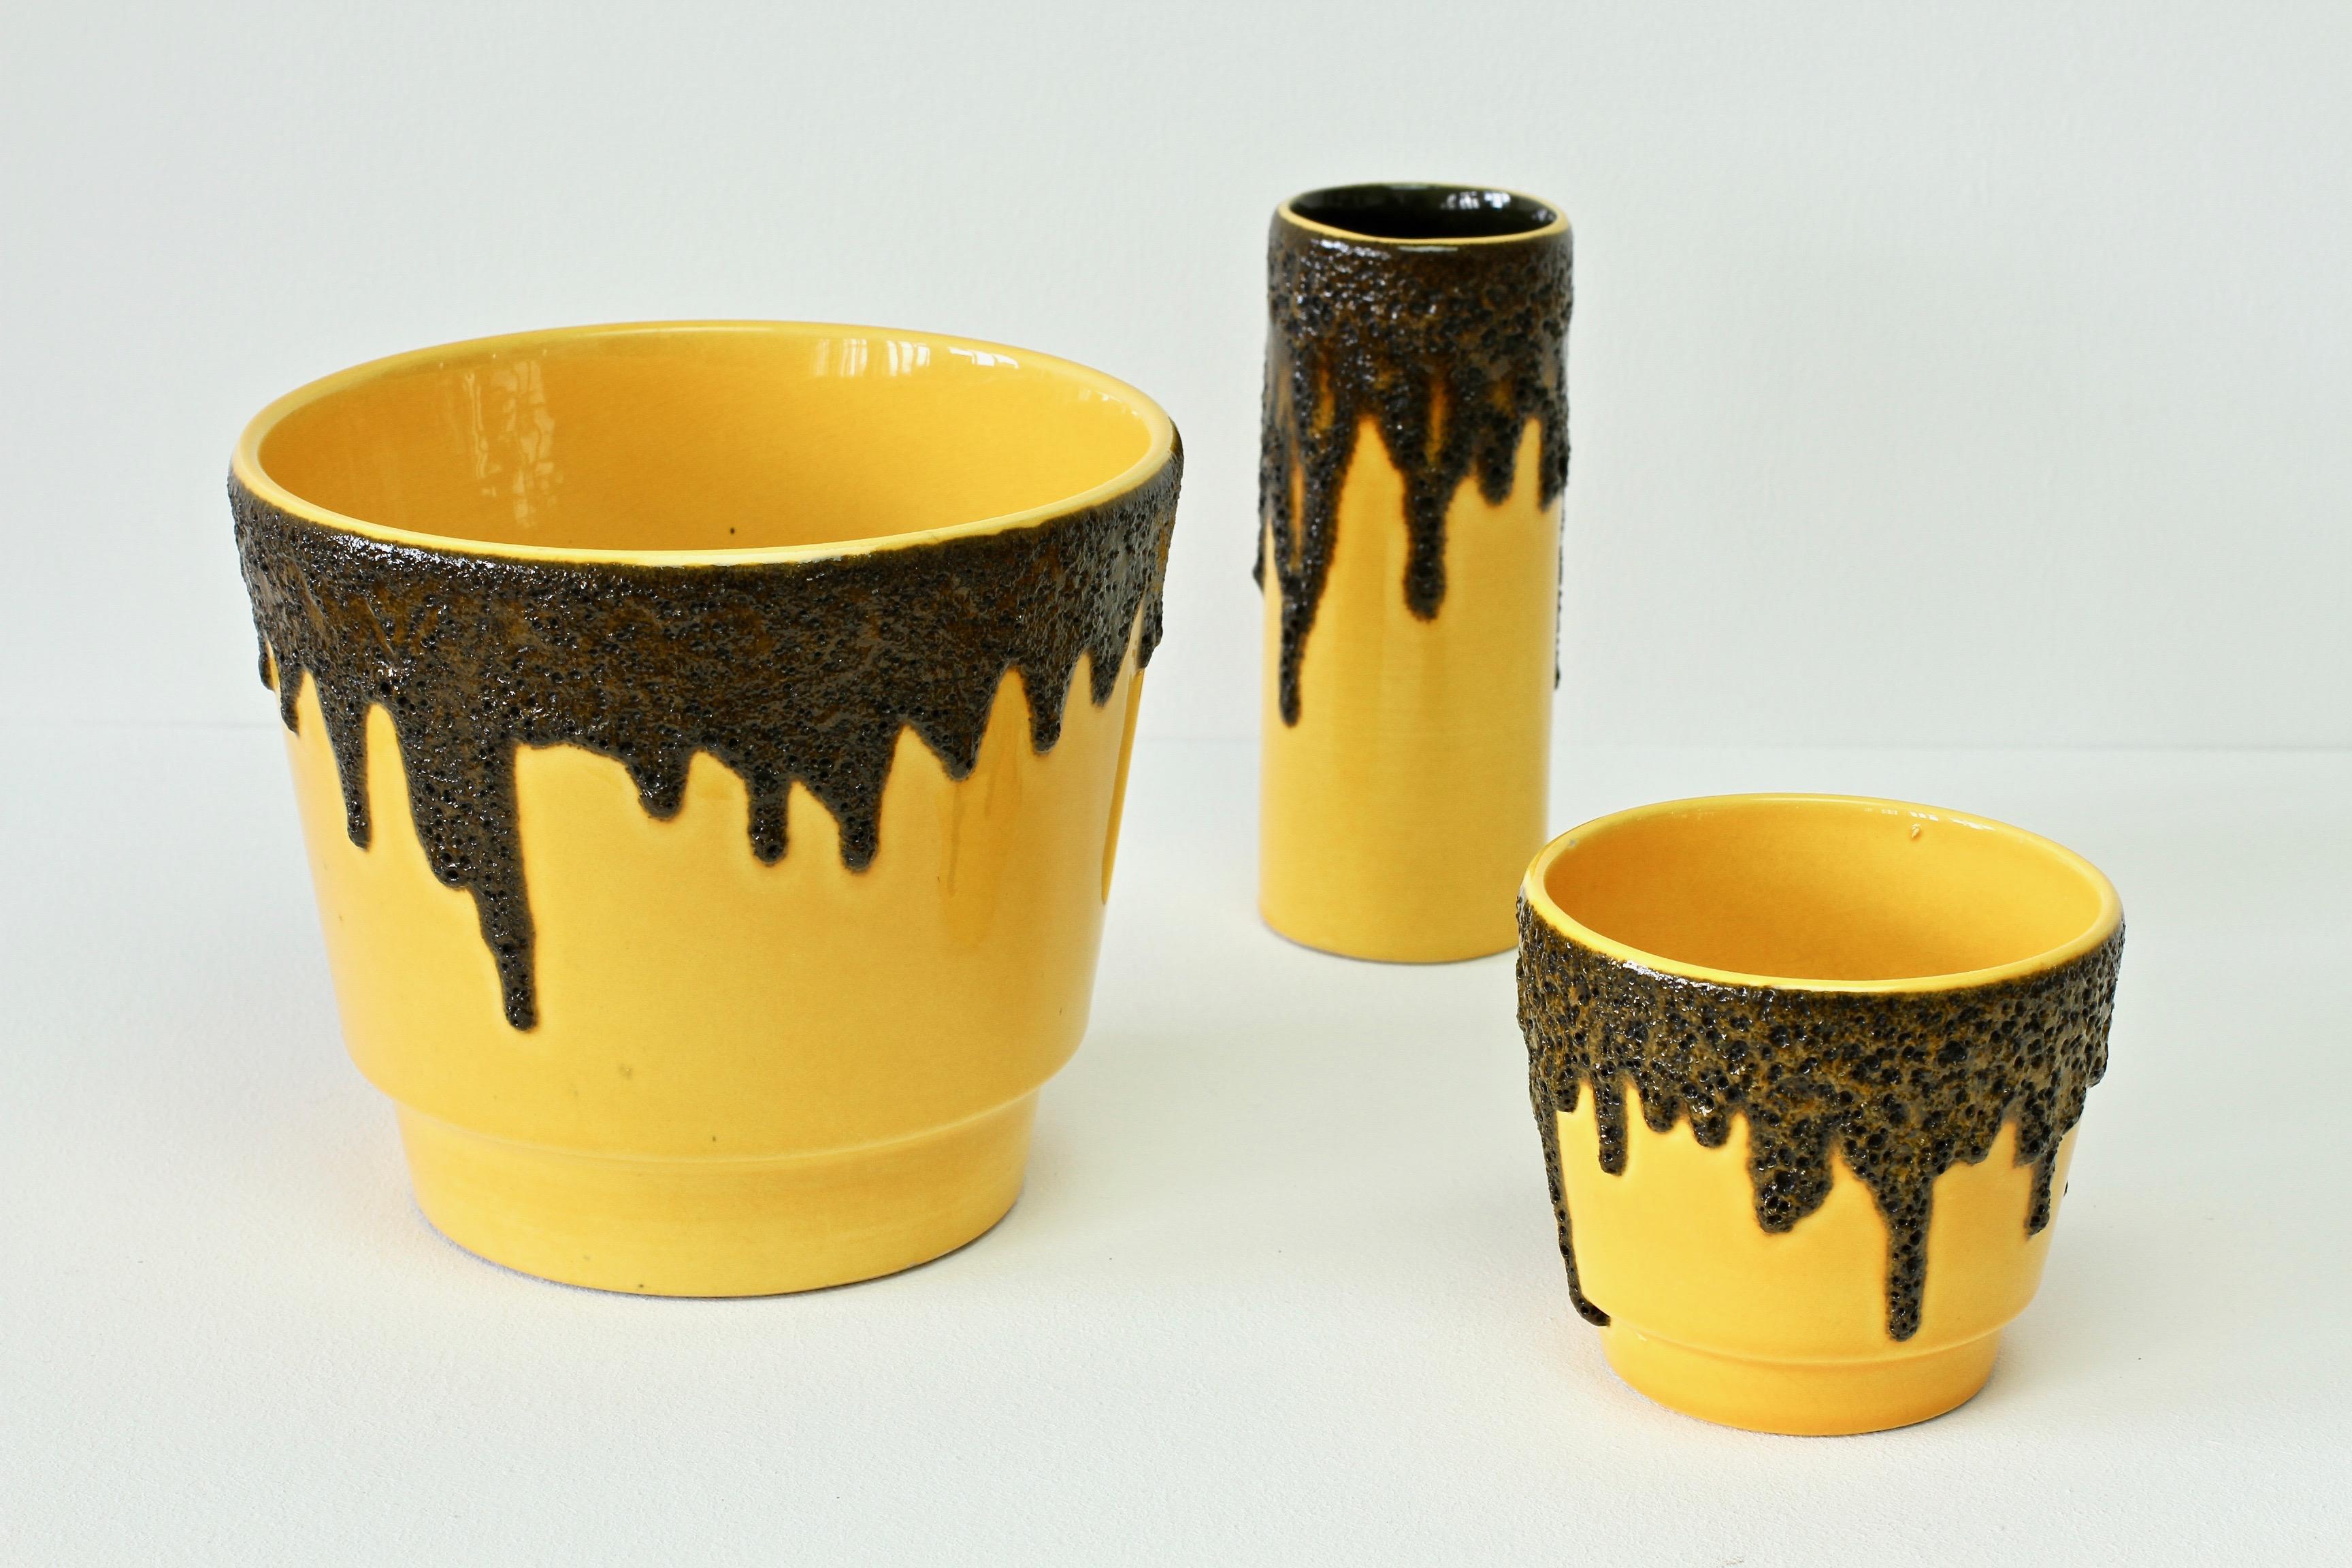 Westdeutsche Vintage-Vase mit schwarzer Lavaglasur, leuchtend gelb, 1970er Jahre (Deutsch)